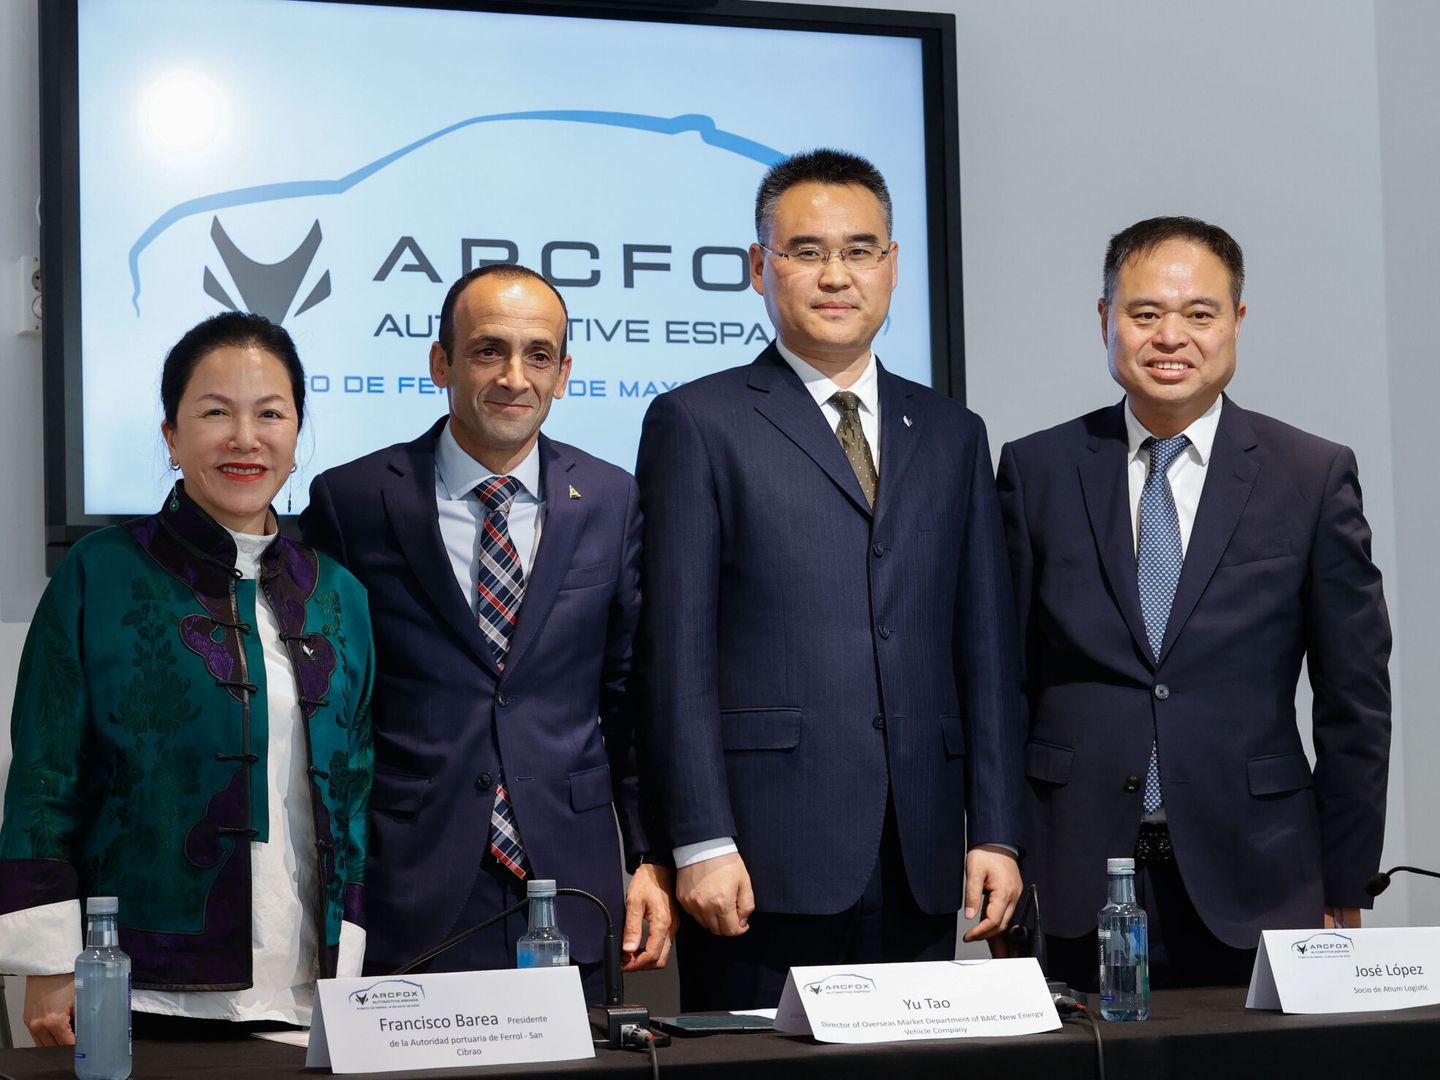 Yu Tao y Zheng Fang, directivos de la empresa china BAIC y su filial, Arcfox junto al presidente del puerto de Ferrol, Francisco Barea, el jueves 9 de mayo durante la presentación. EFE/Kiko Delgado